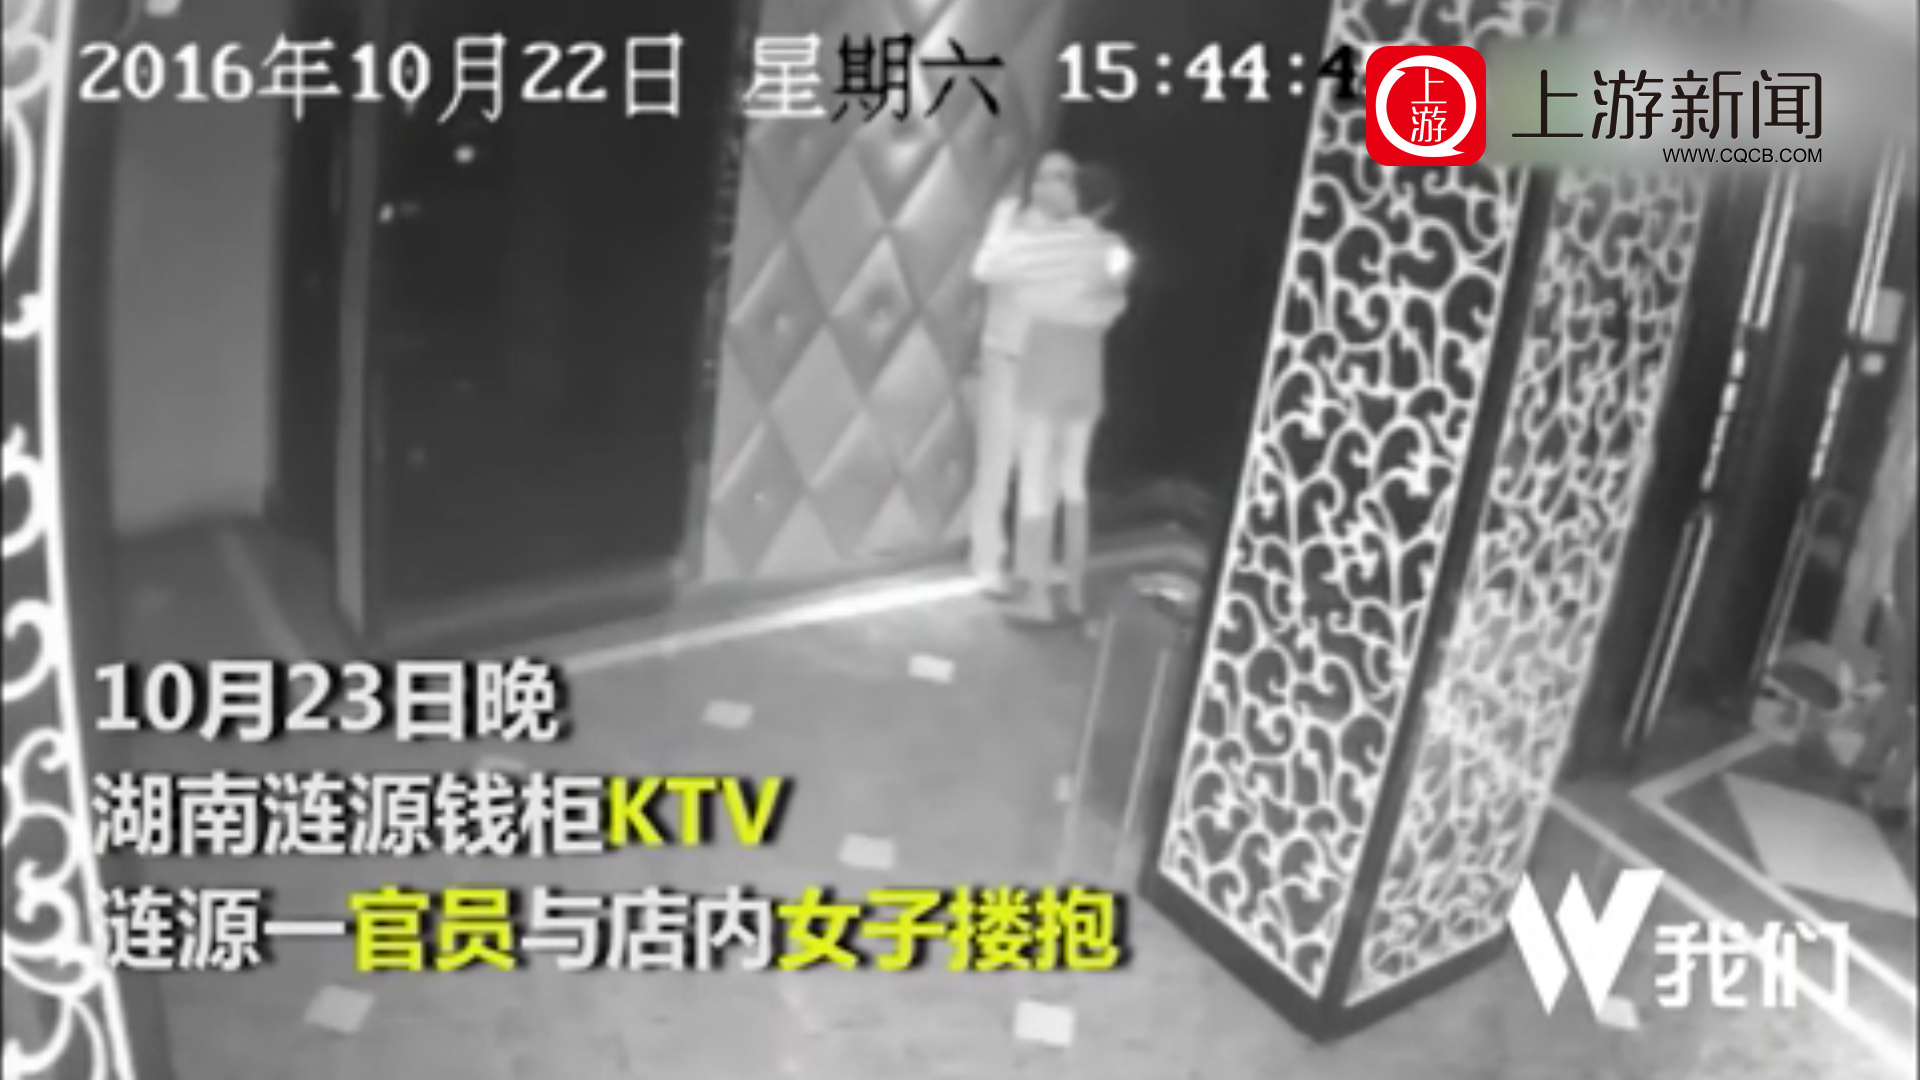 湖南涟源一官员被曝“KTV搂抱女子” ，已被撤职